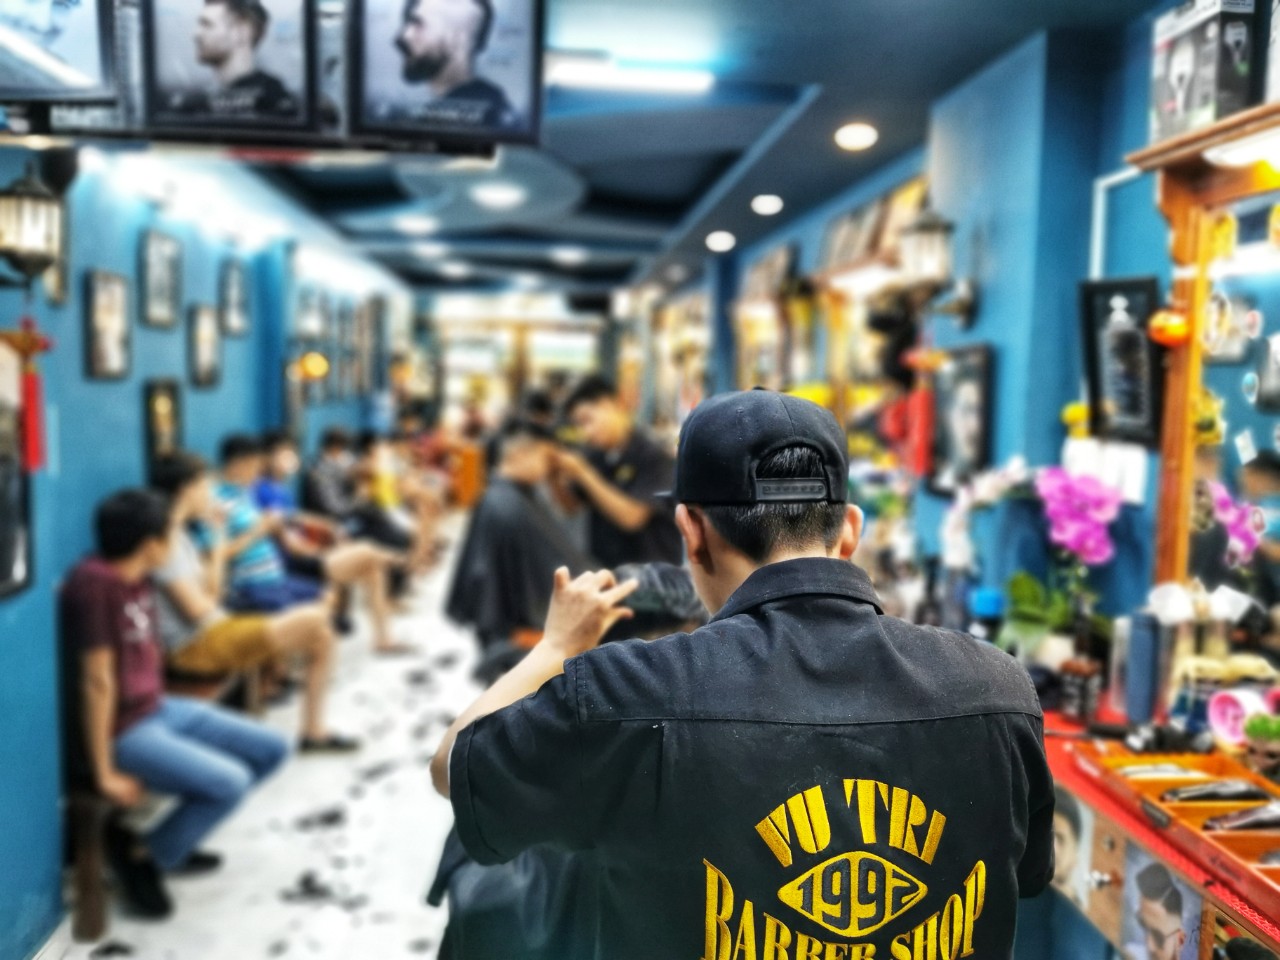 Barber Shop Vũ Trí: Bạn muốn trải nghiệm một kiểu cắt tóc đầy phong cách và sang trọng? Đến với Barber Shop Vũ Trí bạn sẽ được sở hữu một mái tóc đẹp như ý muốn. Chúng tôi cam kết mang đến cho bạn những trải nghiệm tốt nhất với đội ngũ chuyên nghiệp và tận tình.